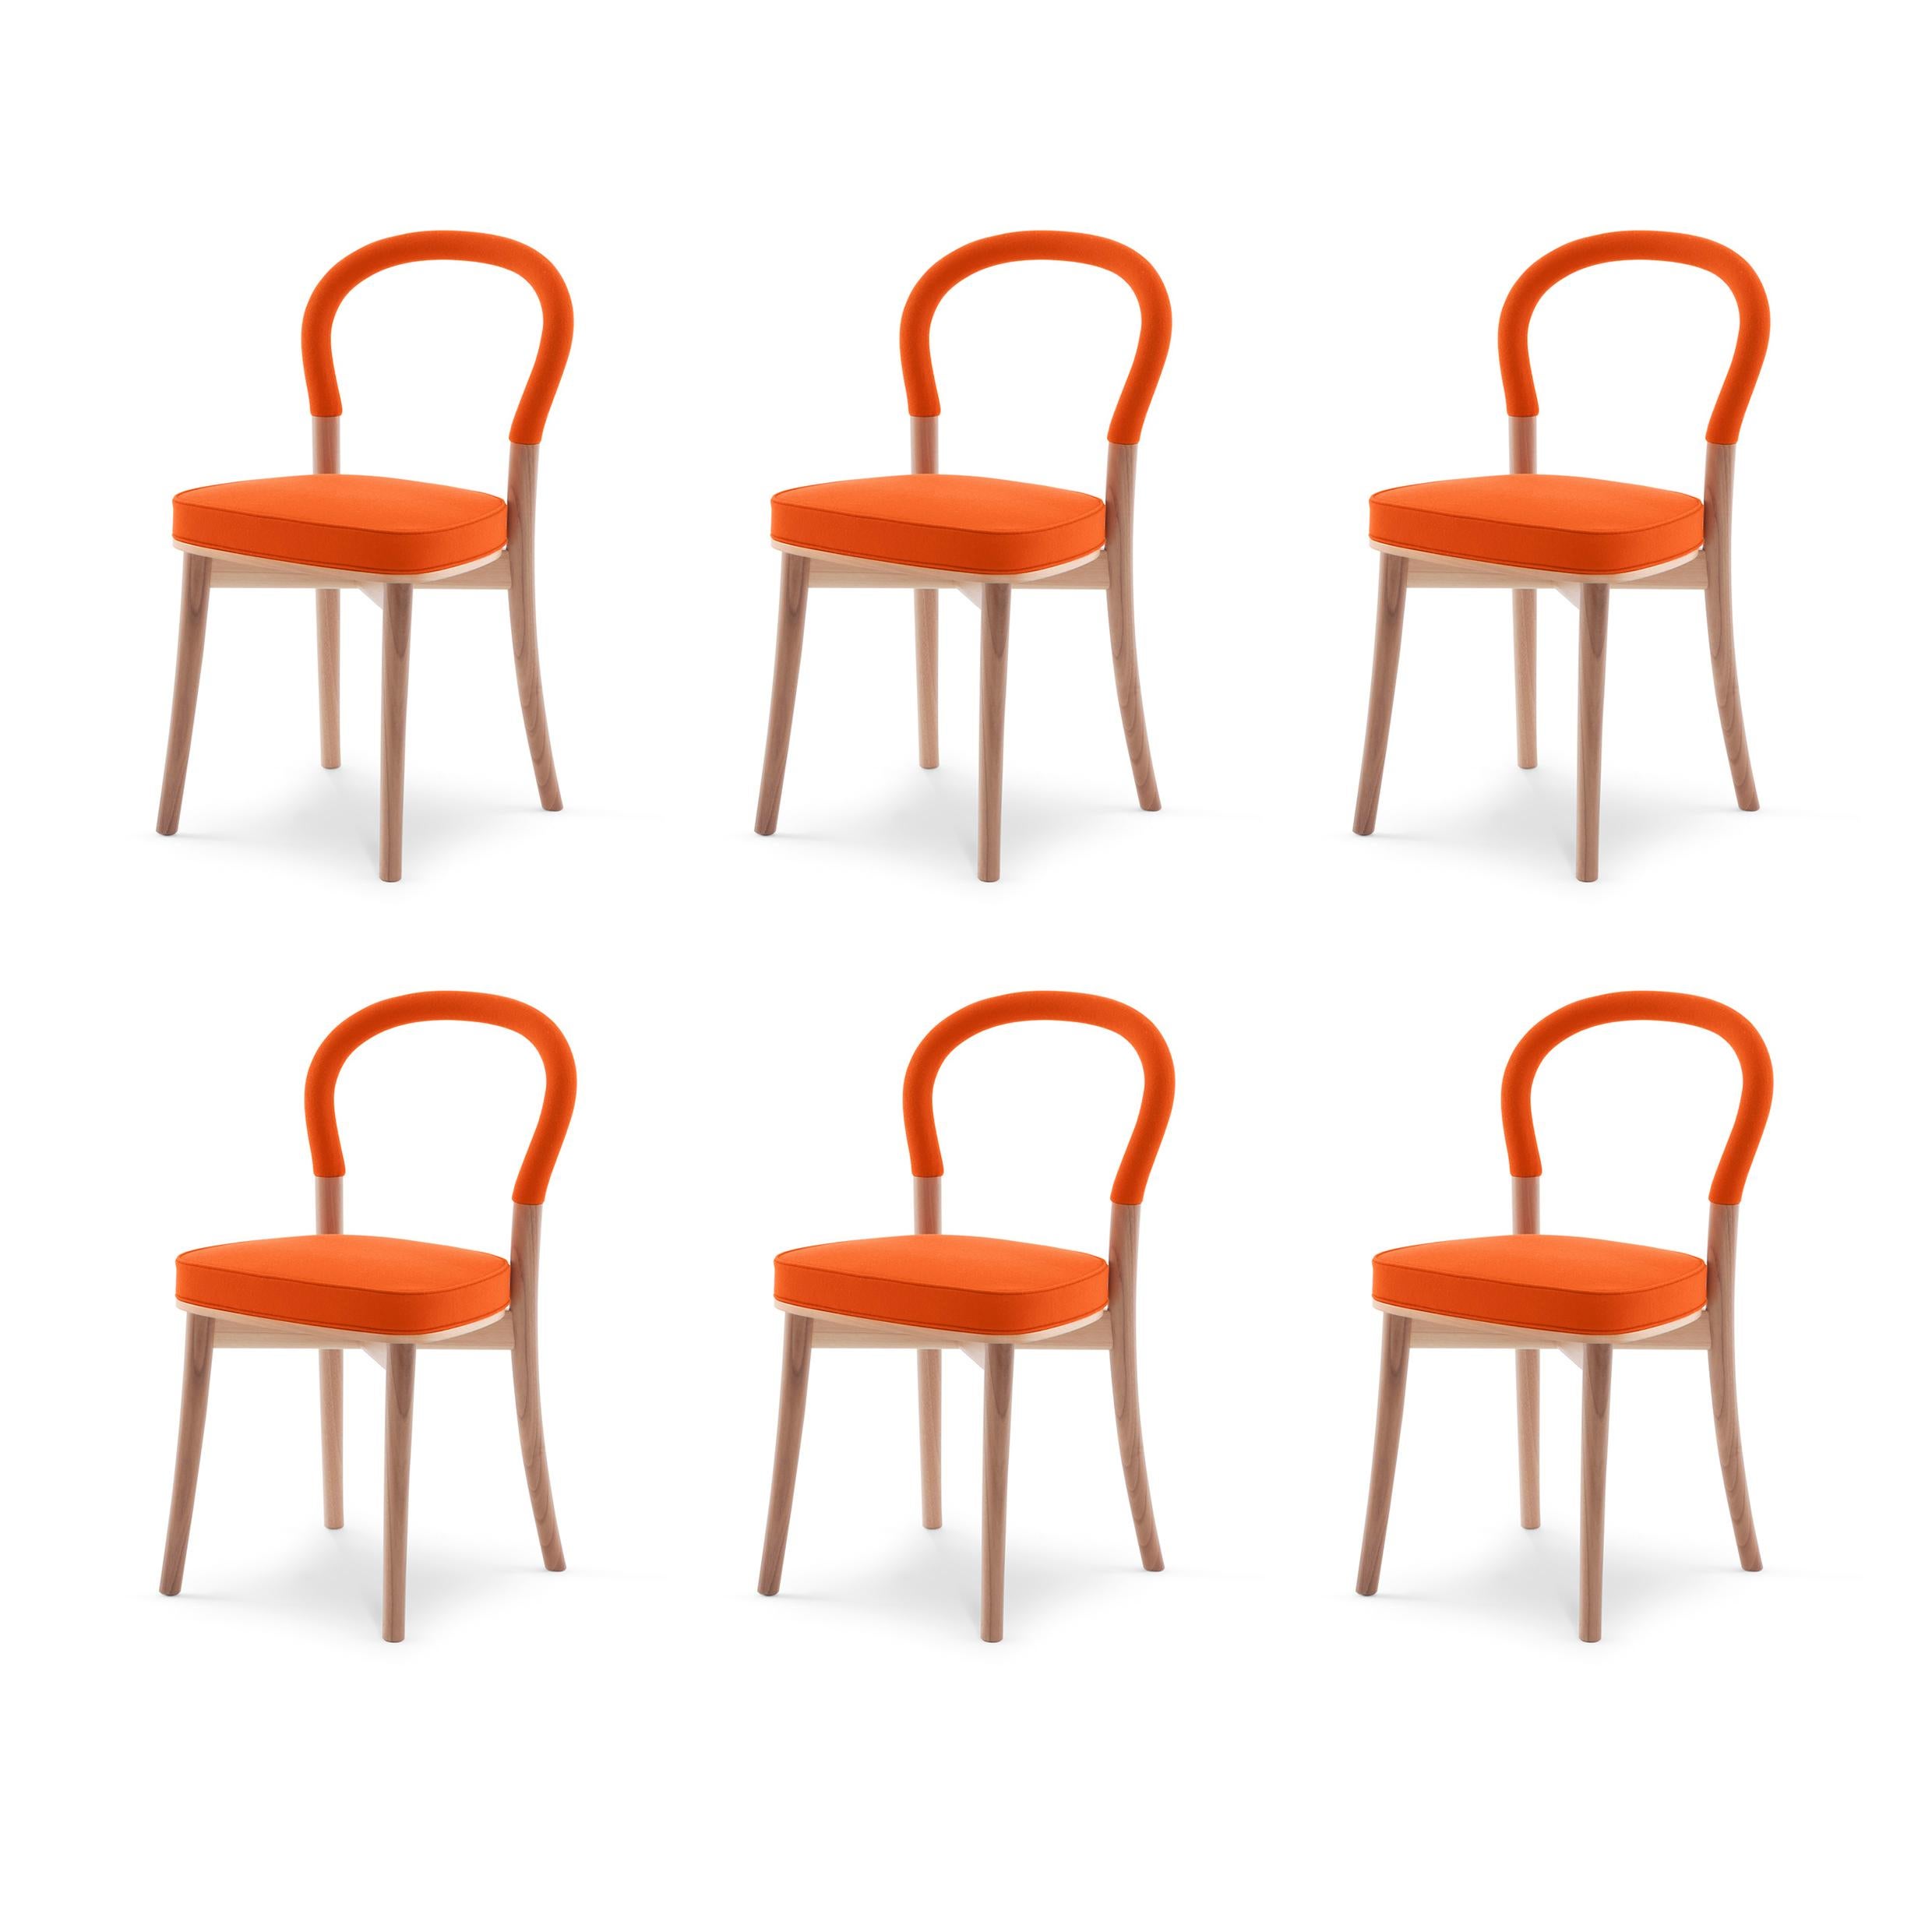 Chaise conçue par Erik Gunnar en 1934-1937. Relancé en 1983.
Fabriqué par Cassina en Italie.

La chaise de Göteborg est l'interprétation poétique des idées rationalistes par Erik Gunnar Asplund. La chaise a été commandée pour l'extension de l'hôtel